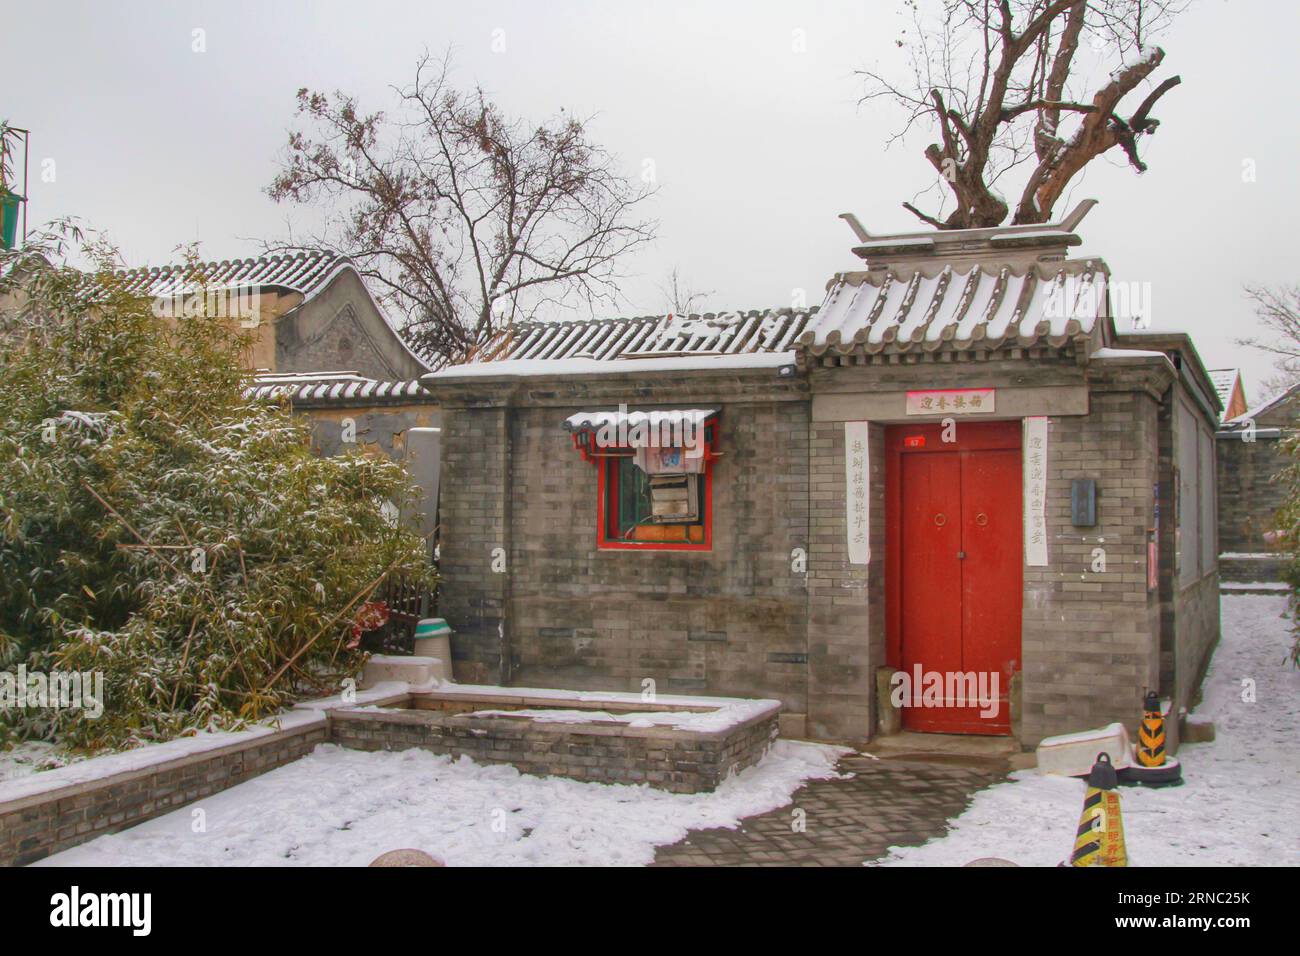 Erleben Sie den faszinierenden Anblick der alten chinesischen Architektur, die in einer unberührten weißen Schneedecke verziert ist, eine zeitlose Mischung aus Geschichte und Winterwunder. Stockfoto